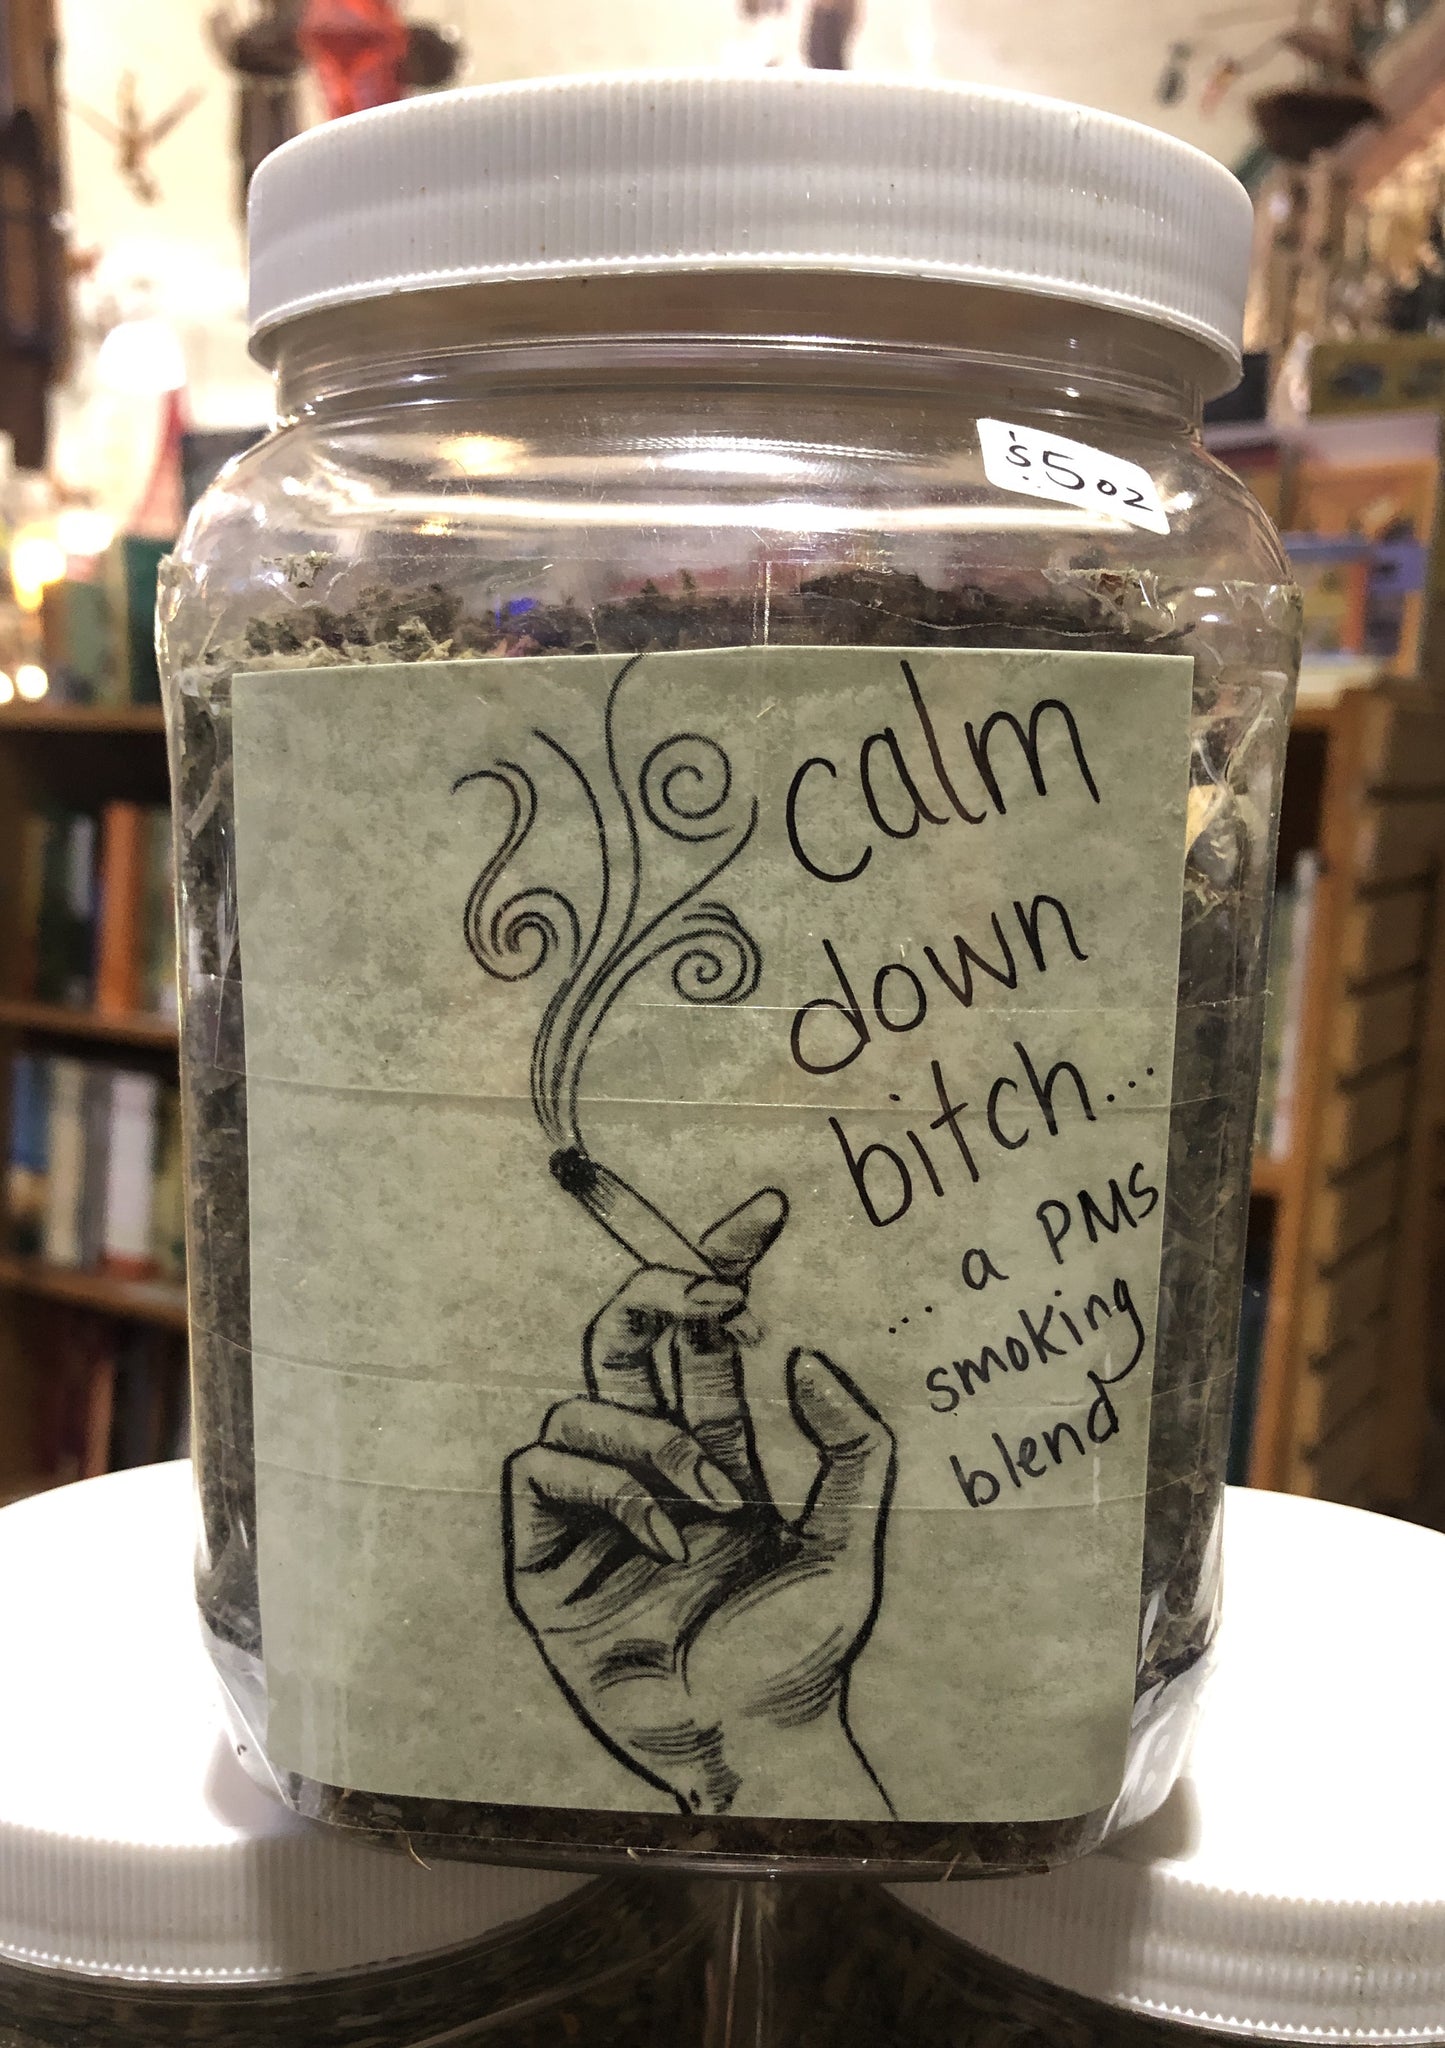 Calm Down Bitch- A PMS Smoking Blend